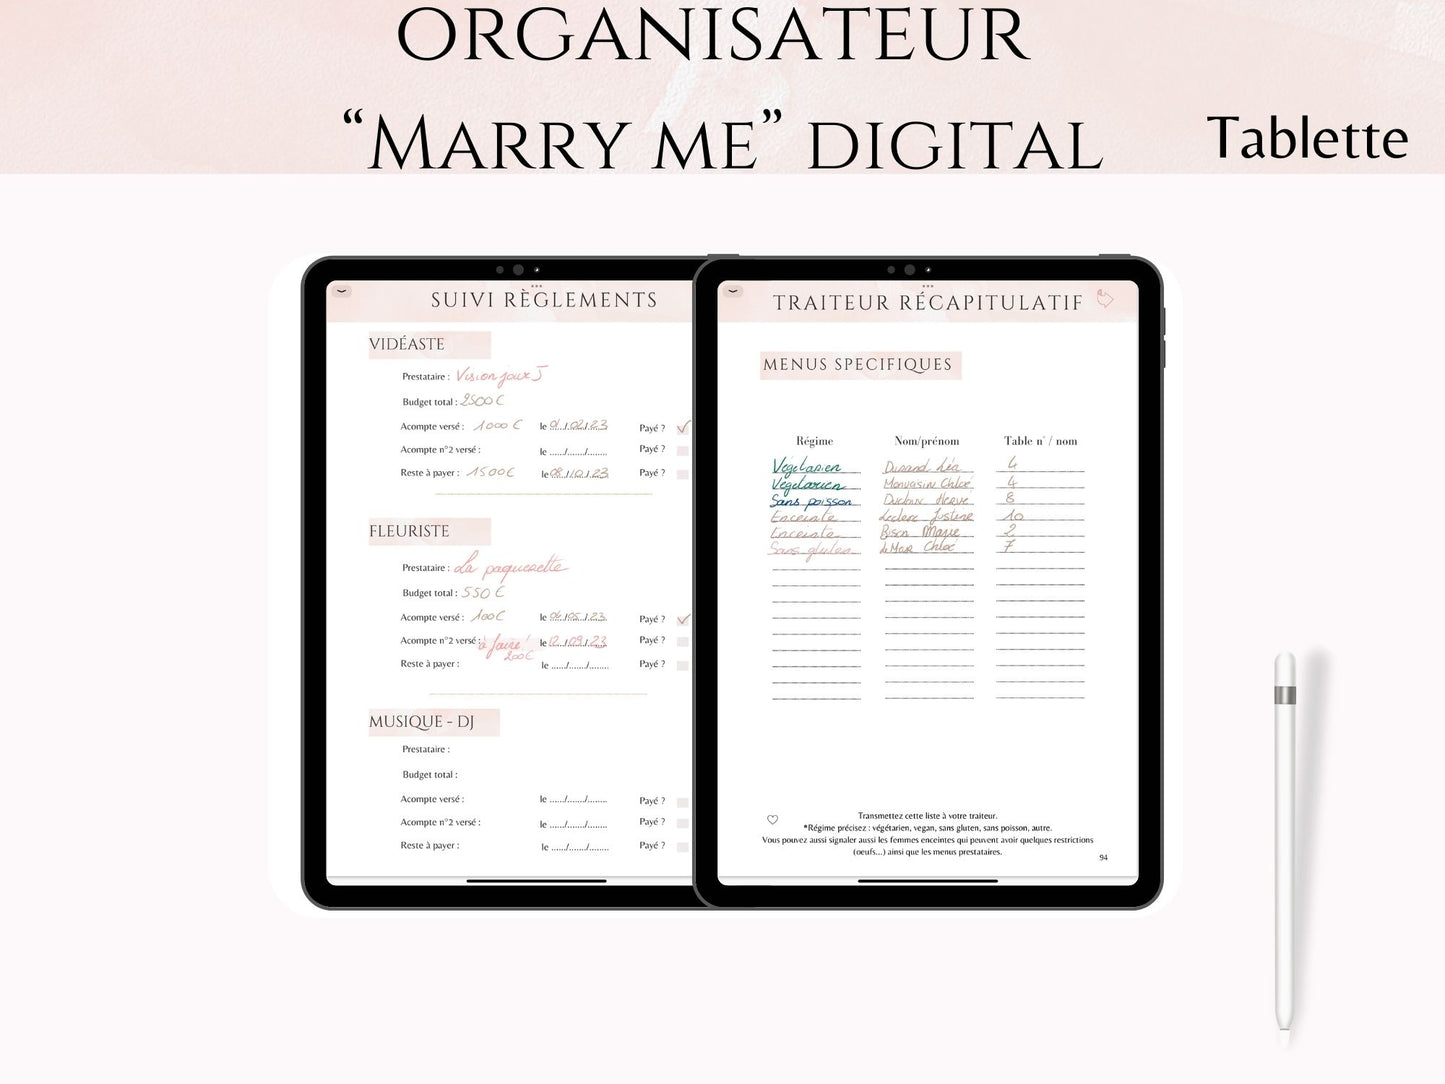 Organisateur de mariage digital - "Marry Me" pour Tablette